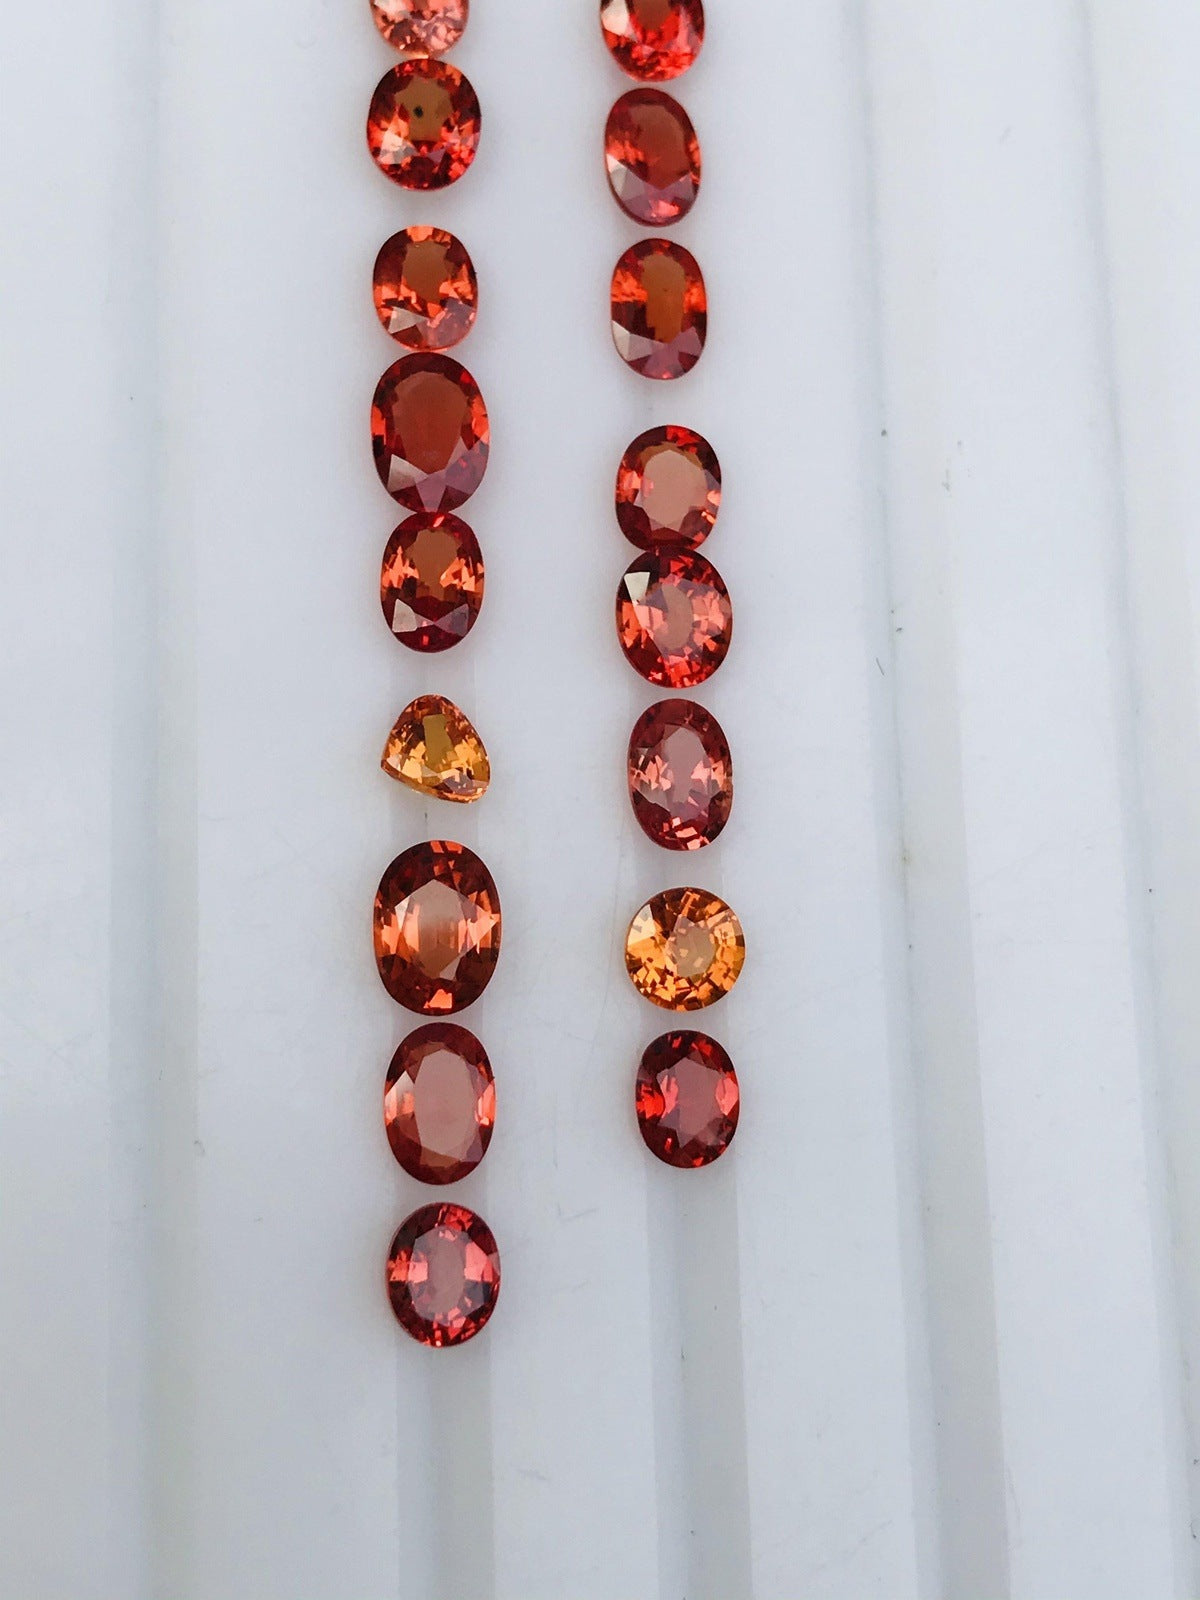 Reddish Orangish Sapphire Loose Gemstones